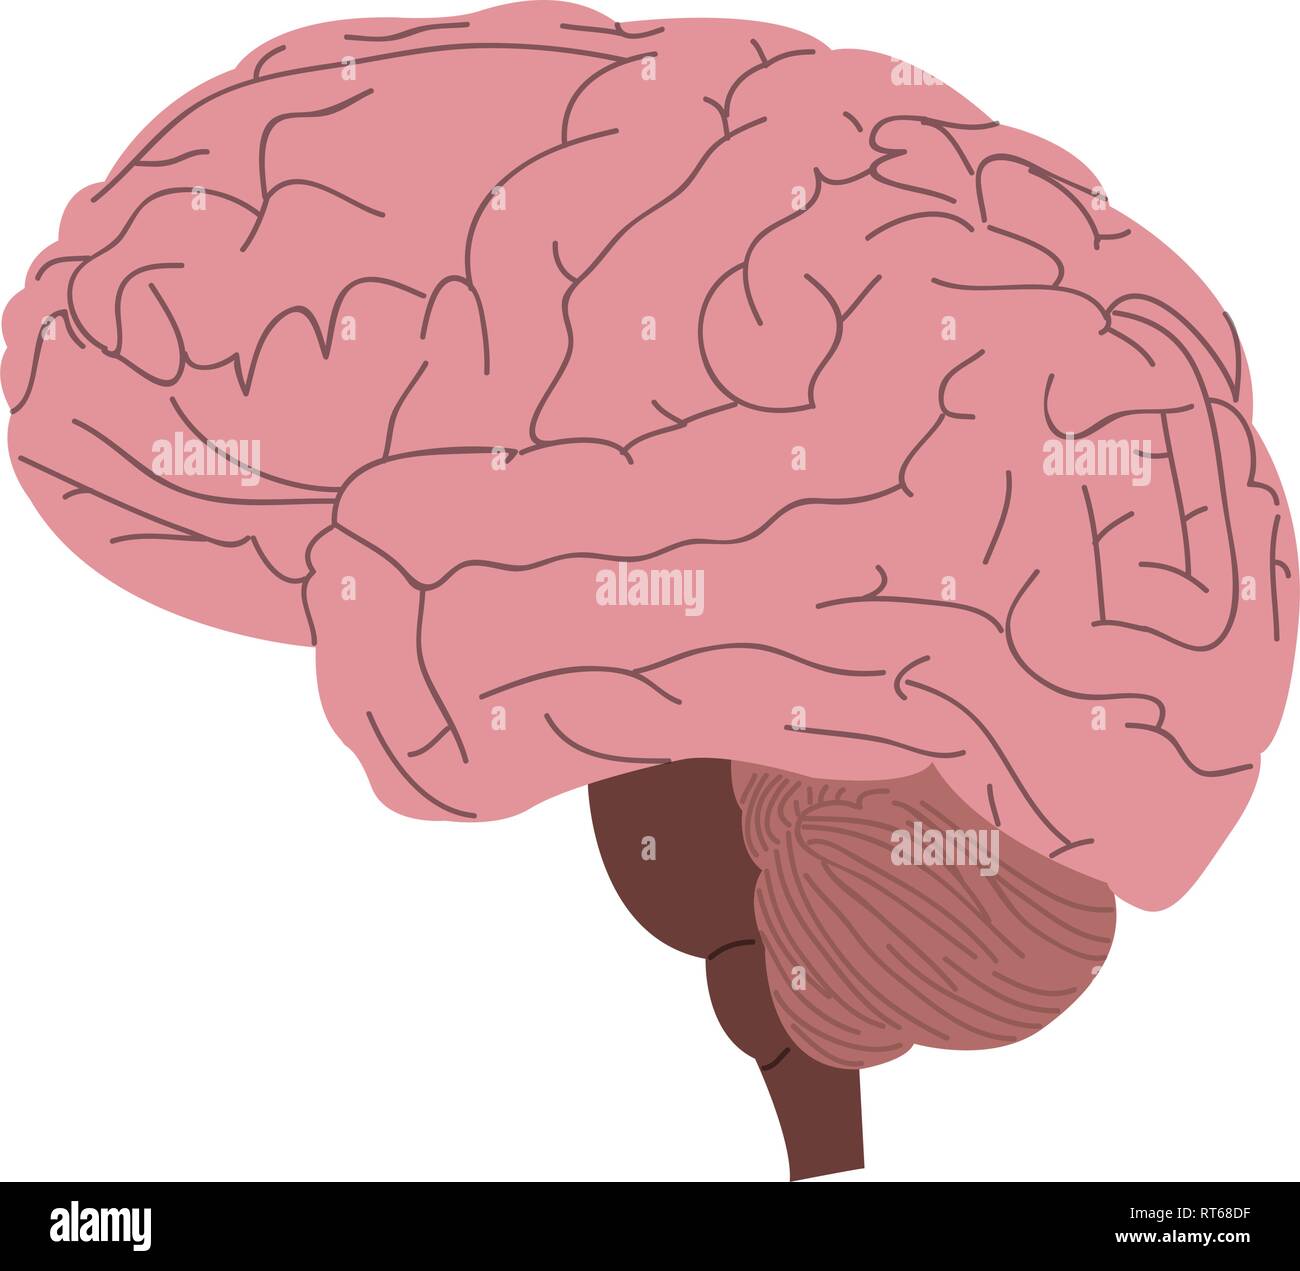 Cerebro Humano aislado Ilustración del Vector